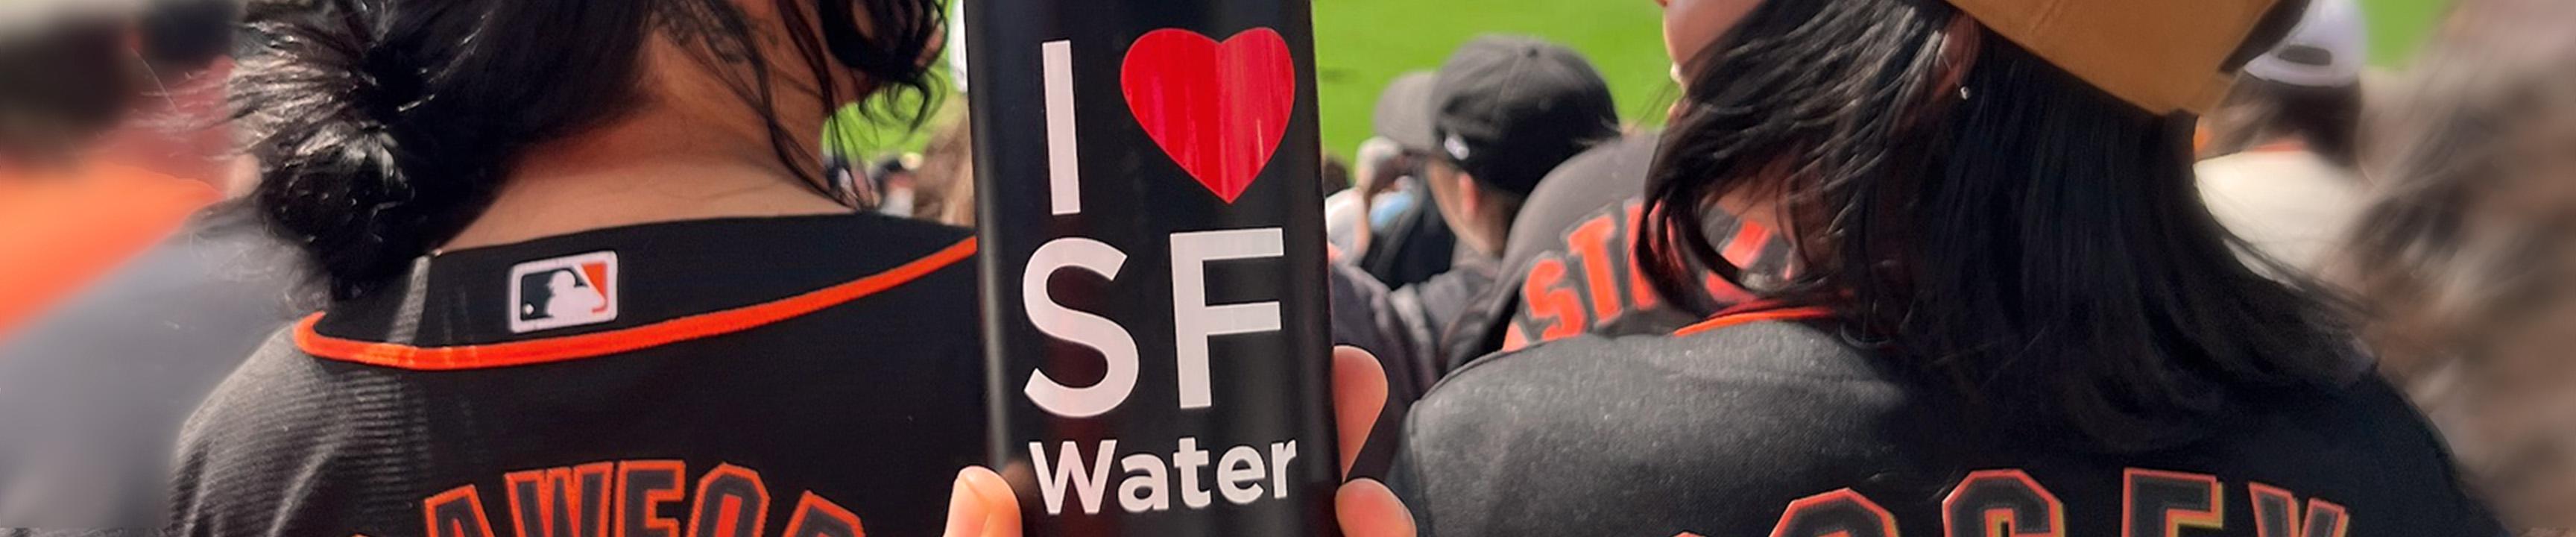 Người hâm mộ thích thú với trò chơi Người khổng lồ và một chai nước có chữ I heart SF Water